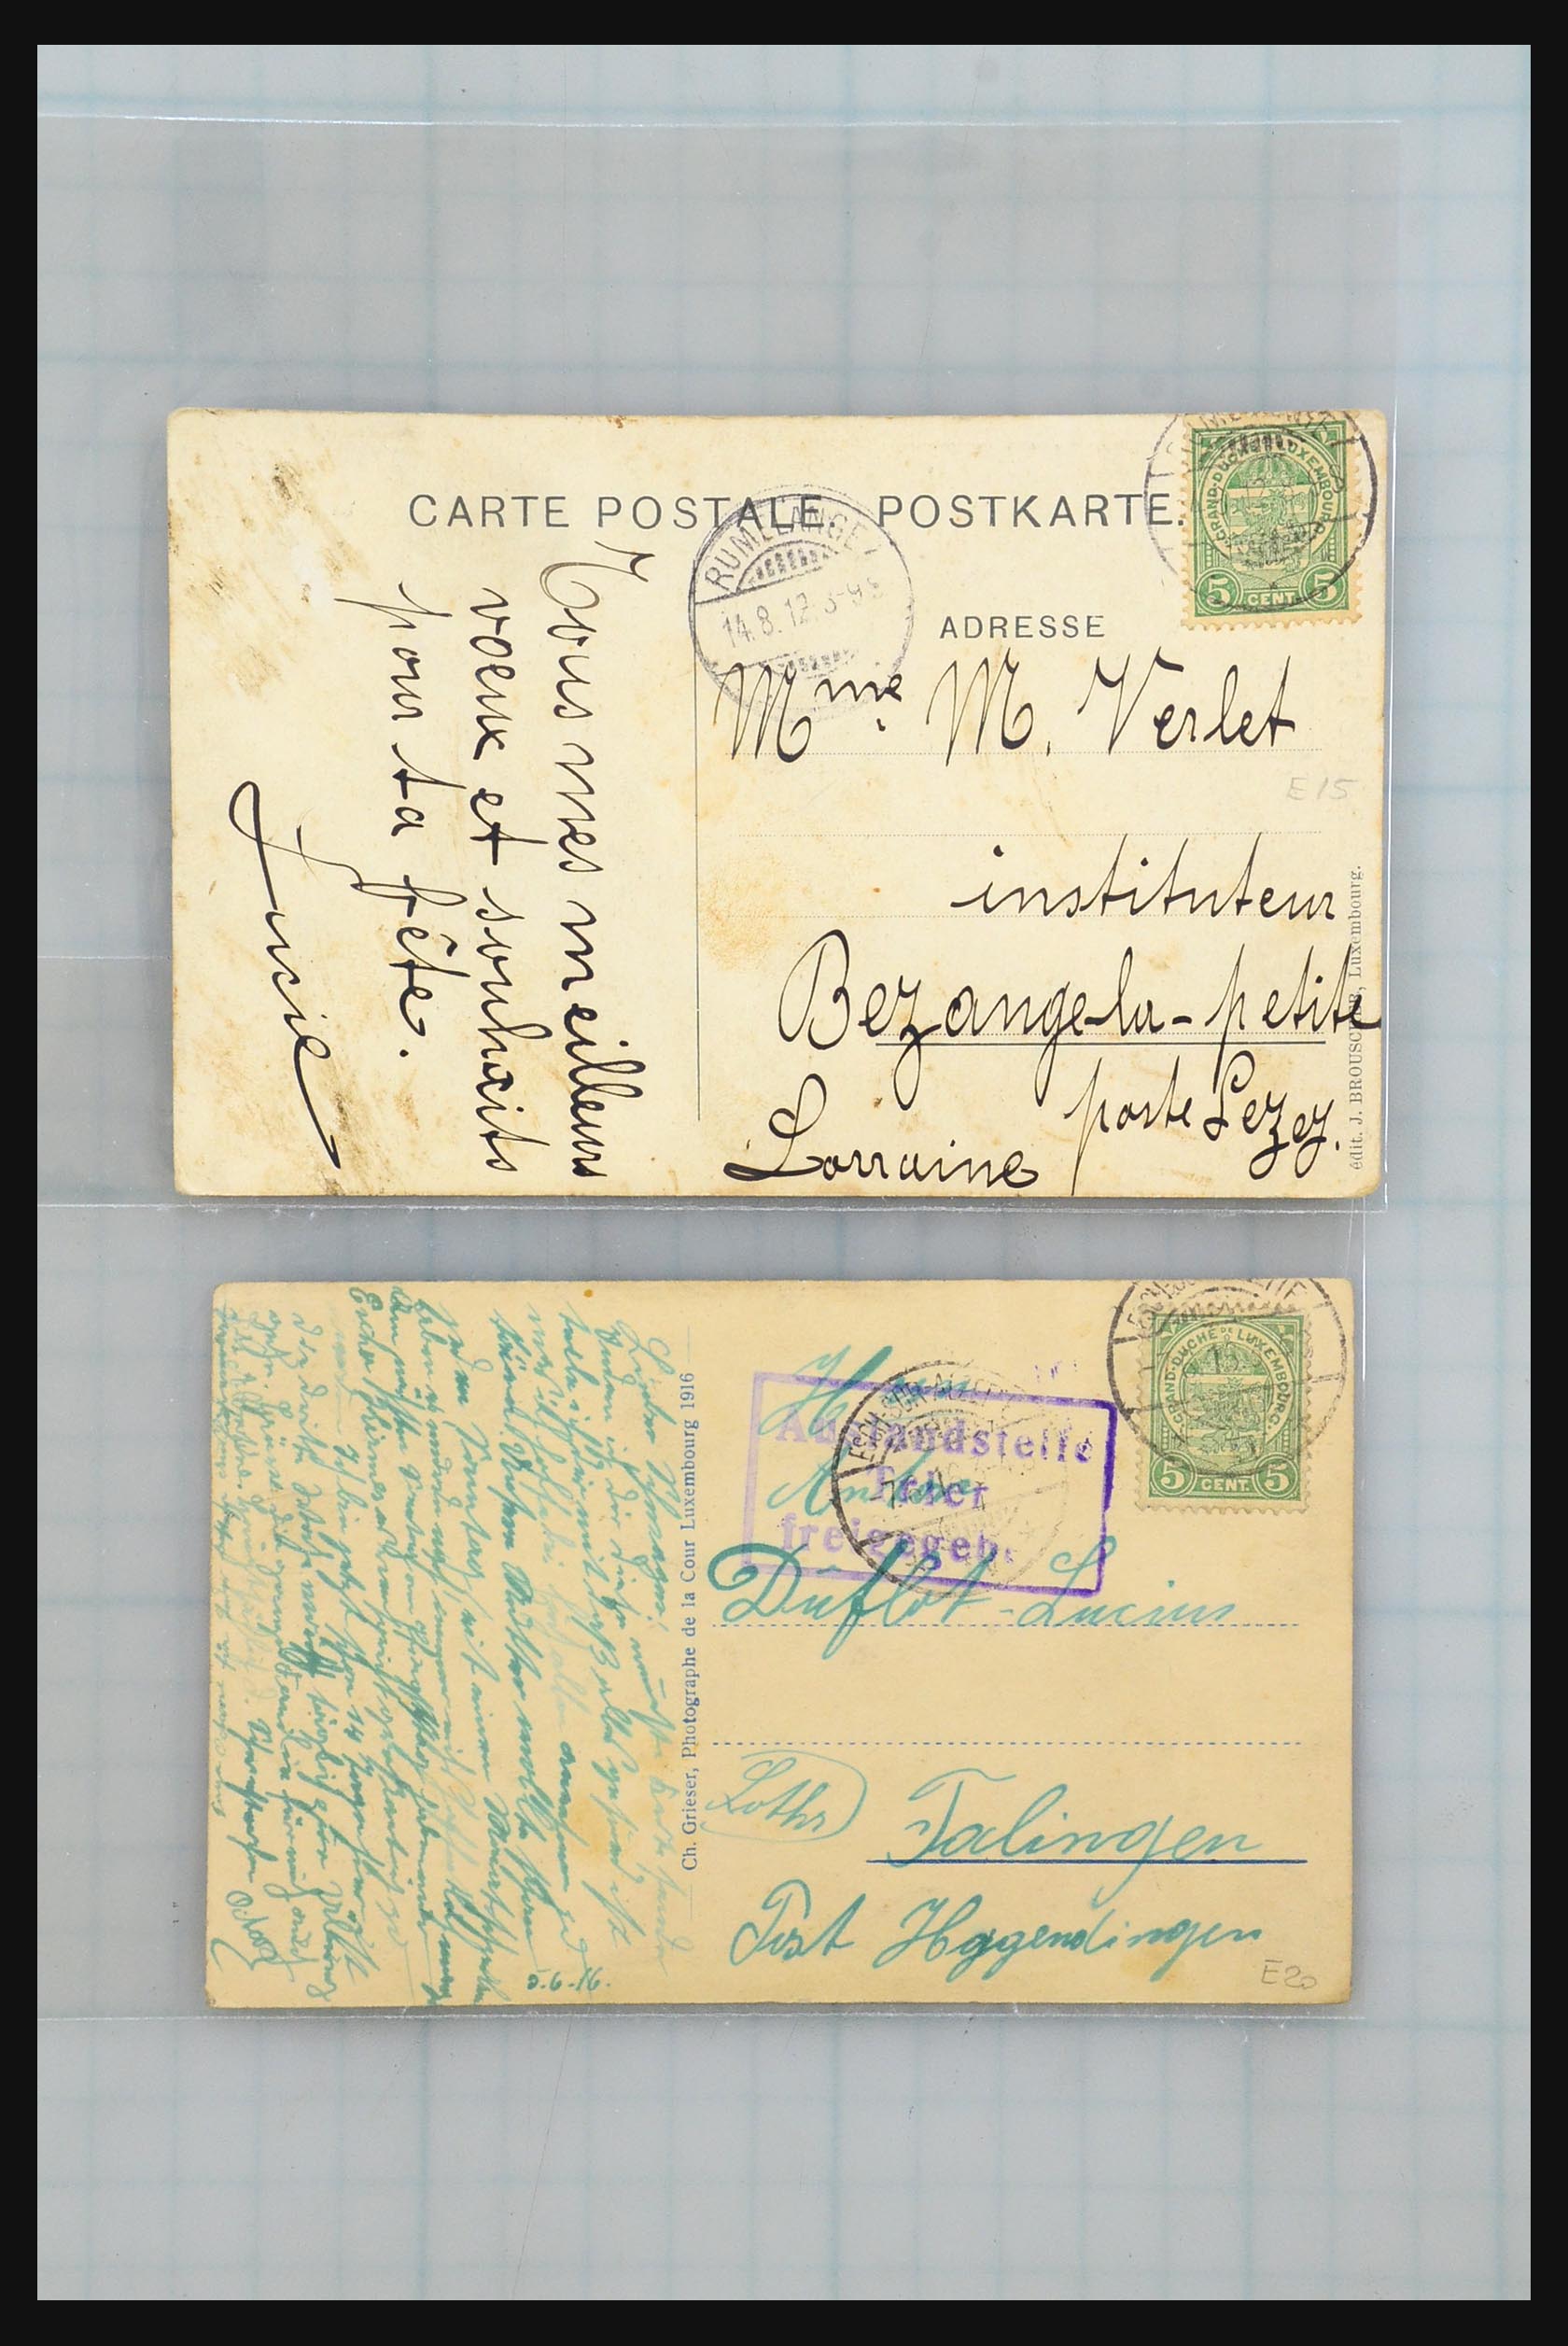 31358 011 - 31358 Portugal/Luxemburg/Griekenland brieven 1880-1960.